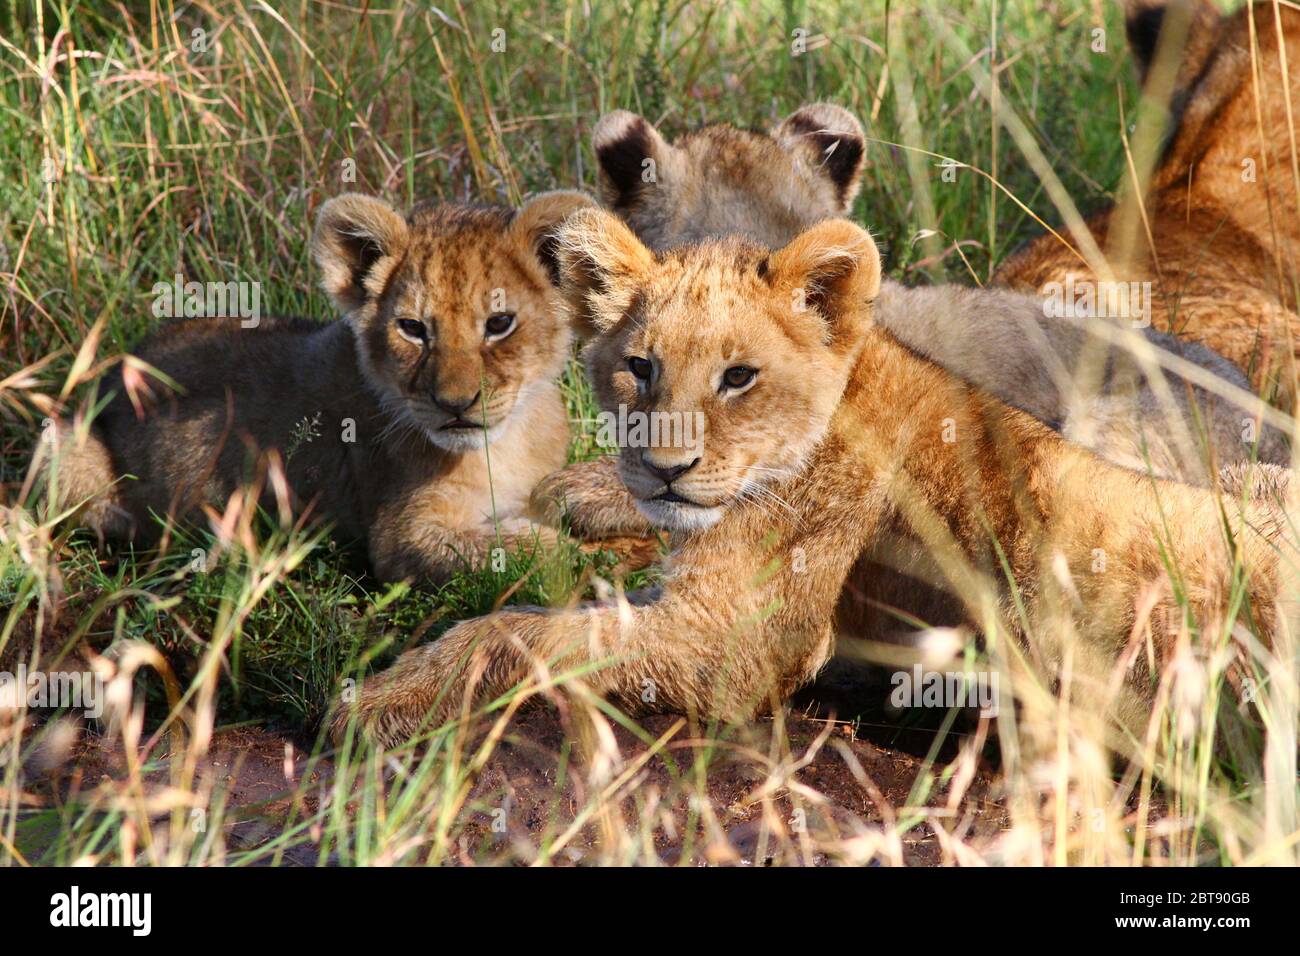 Portrait de Lion, des petits couchés détendus et attentifs dans l'herbe de la savane kenyane au soleil Banque D'Images